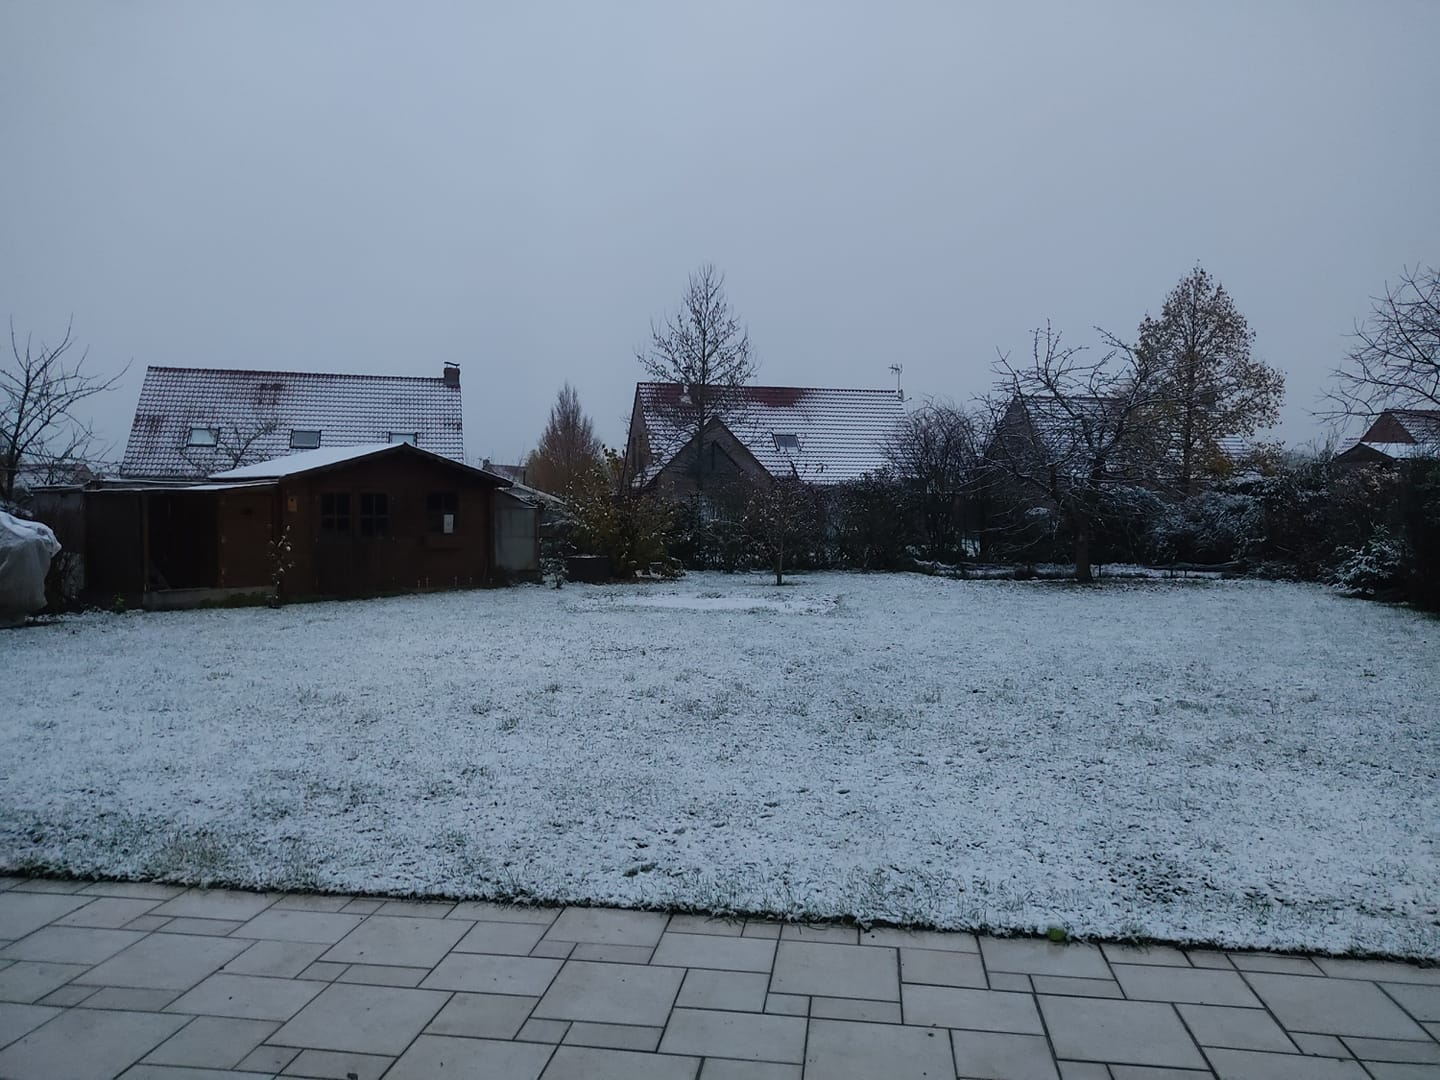 Neige à Auchy-lez-Orchies (59) ce matin du lundi 5 décembre 2022